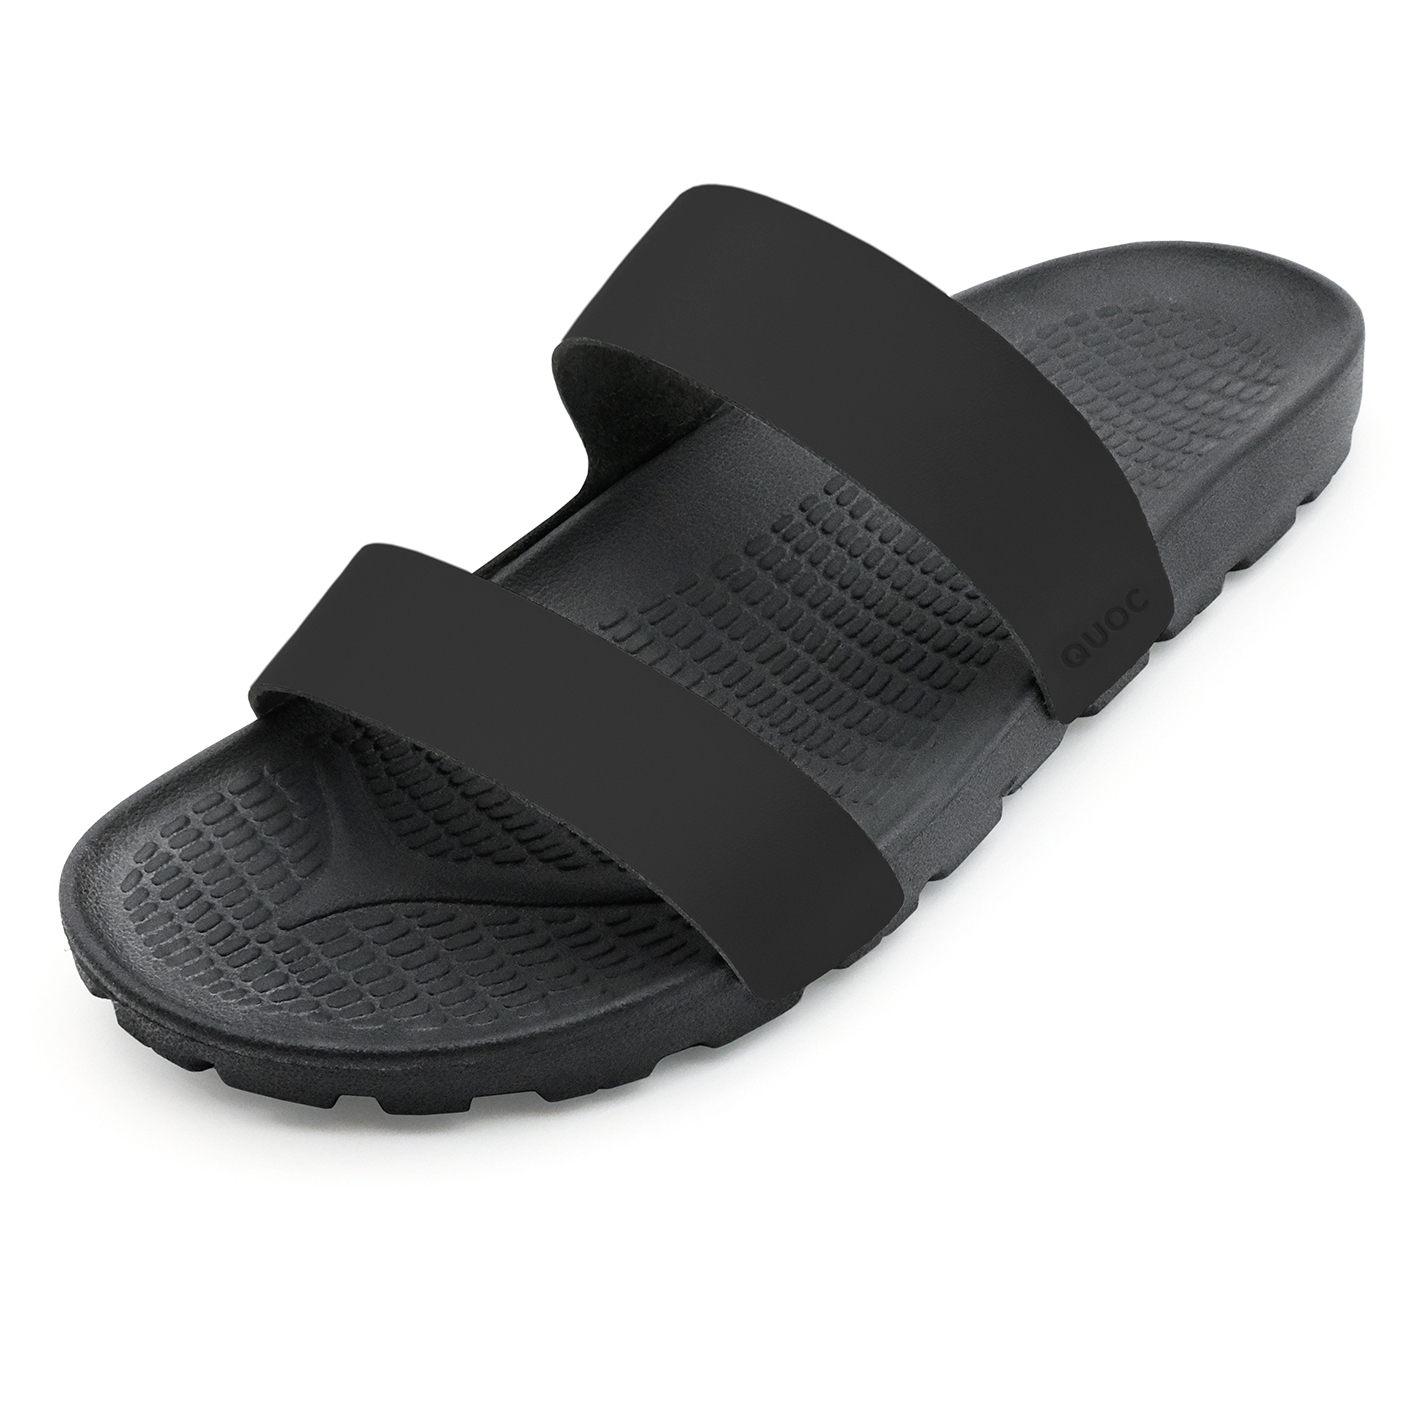 Productfoto van QUOC LaLa Slides Sandalen - zwart